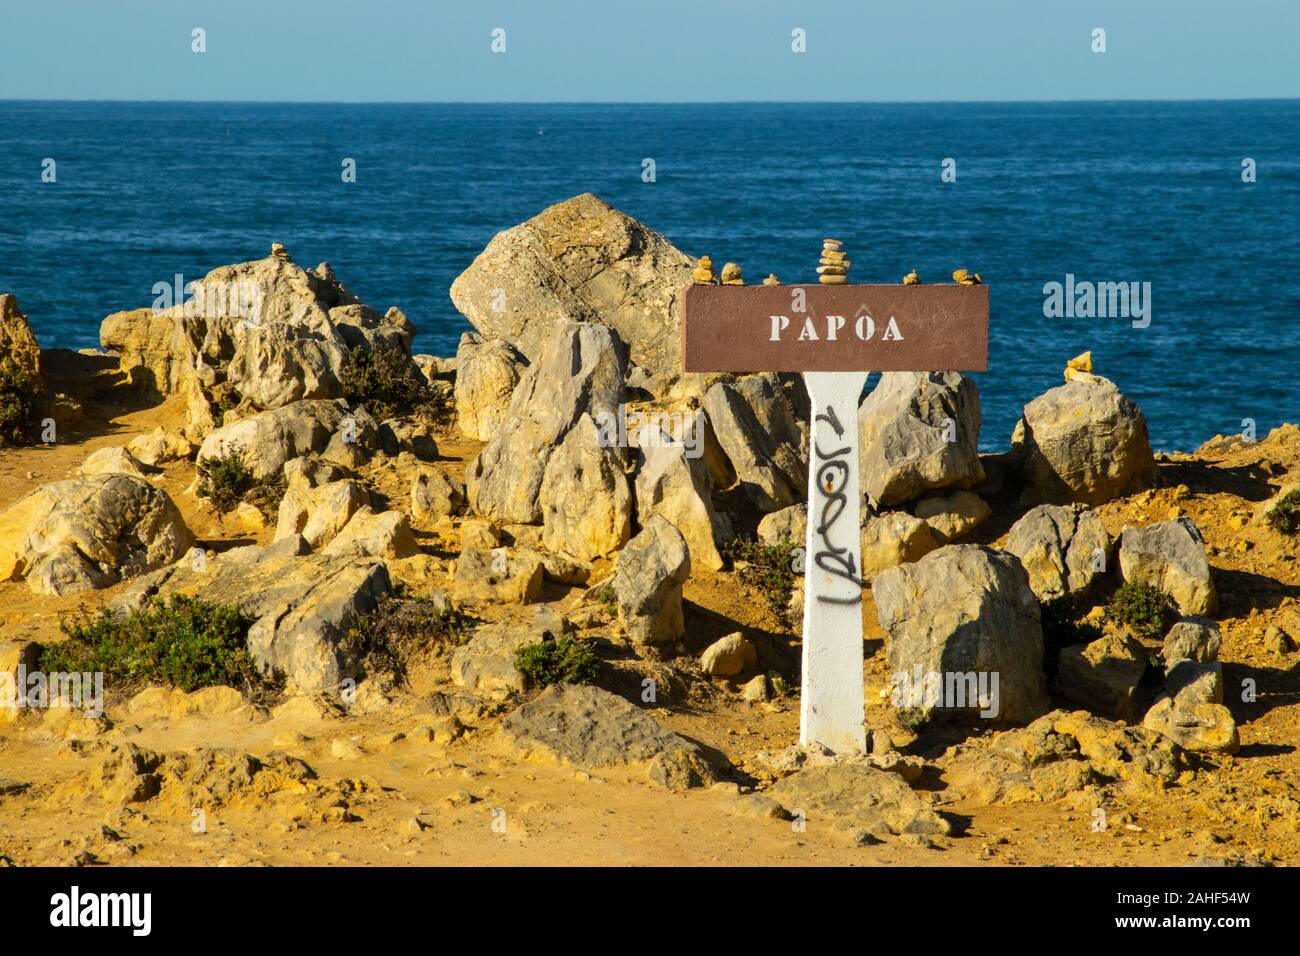 Wegweiser bei Papoa Punkt Peniche Portugal Estremadura Stockfoto